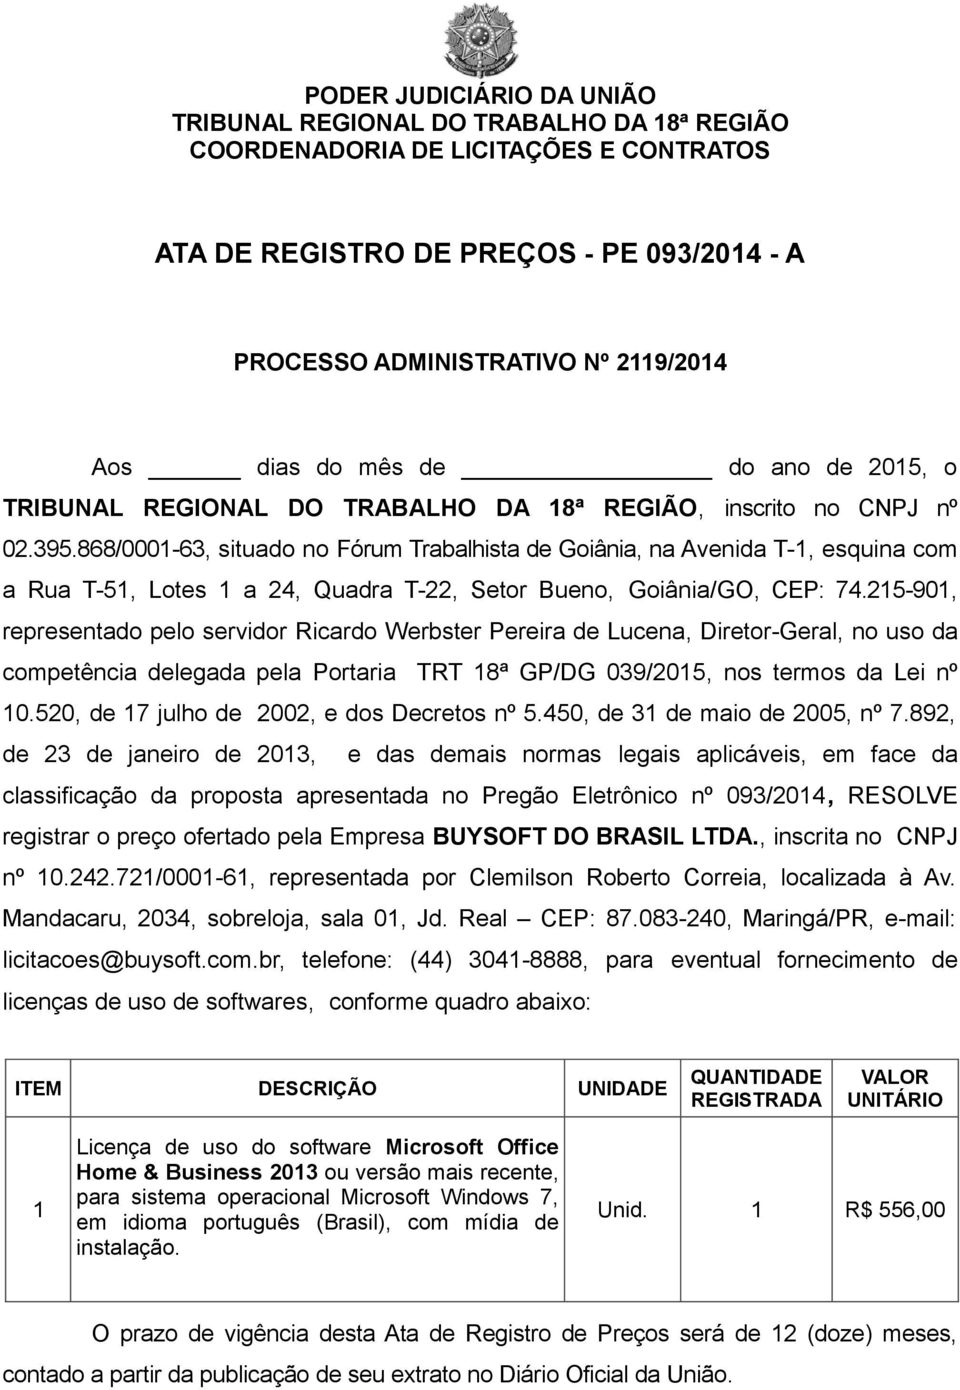 215-901, representado pelo servidor Ricardo Werbster Pereira de Lucena, Diretor-Geral, no uso da competência delegada pela Portaria TRT 18ª GP/DG 039/2015, nos termos da Lei nº 10.